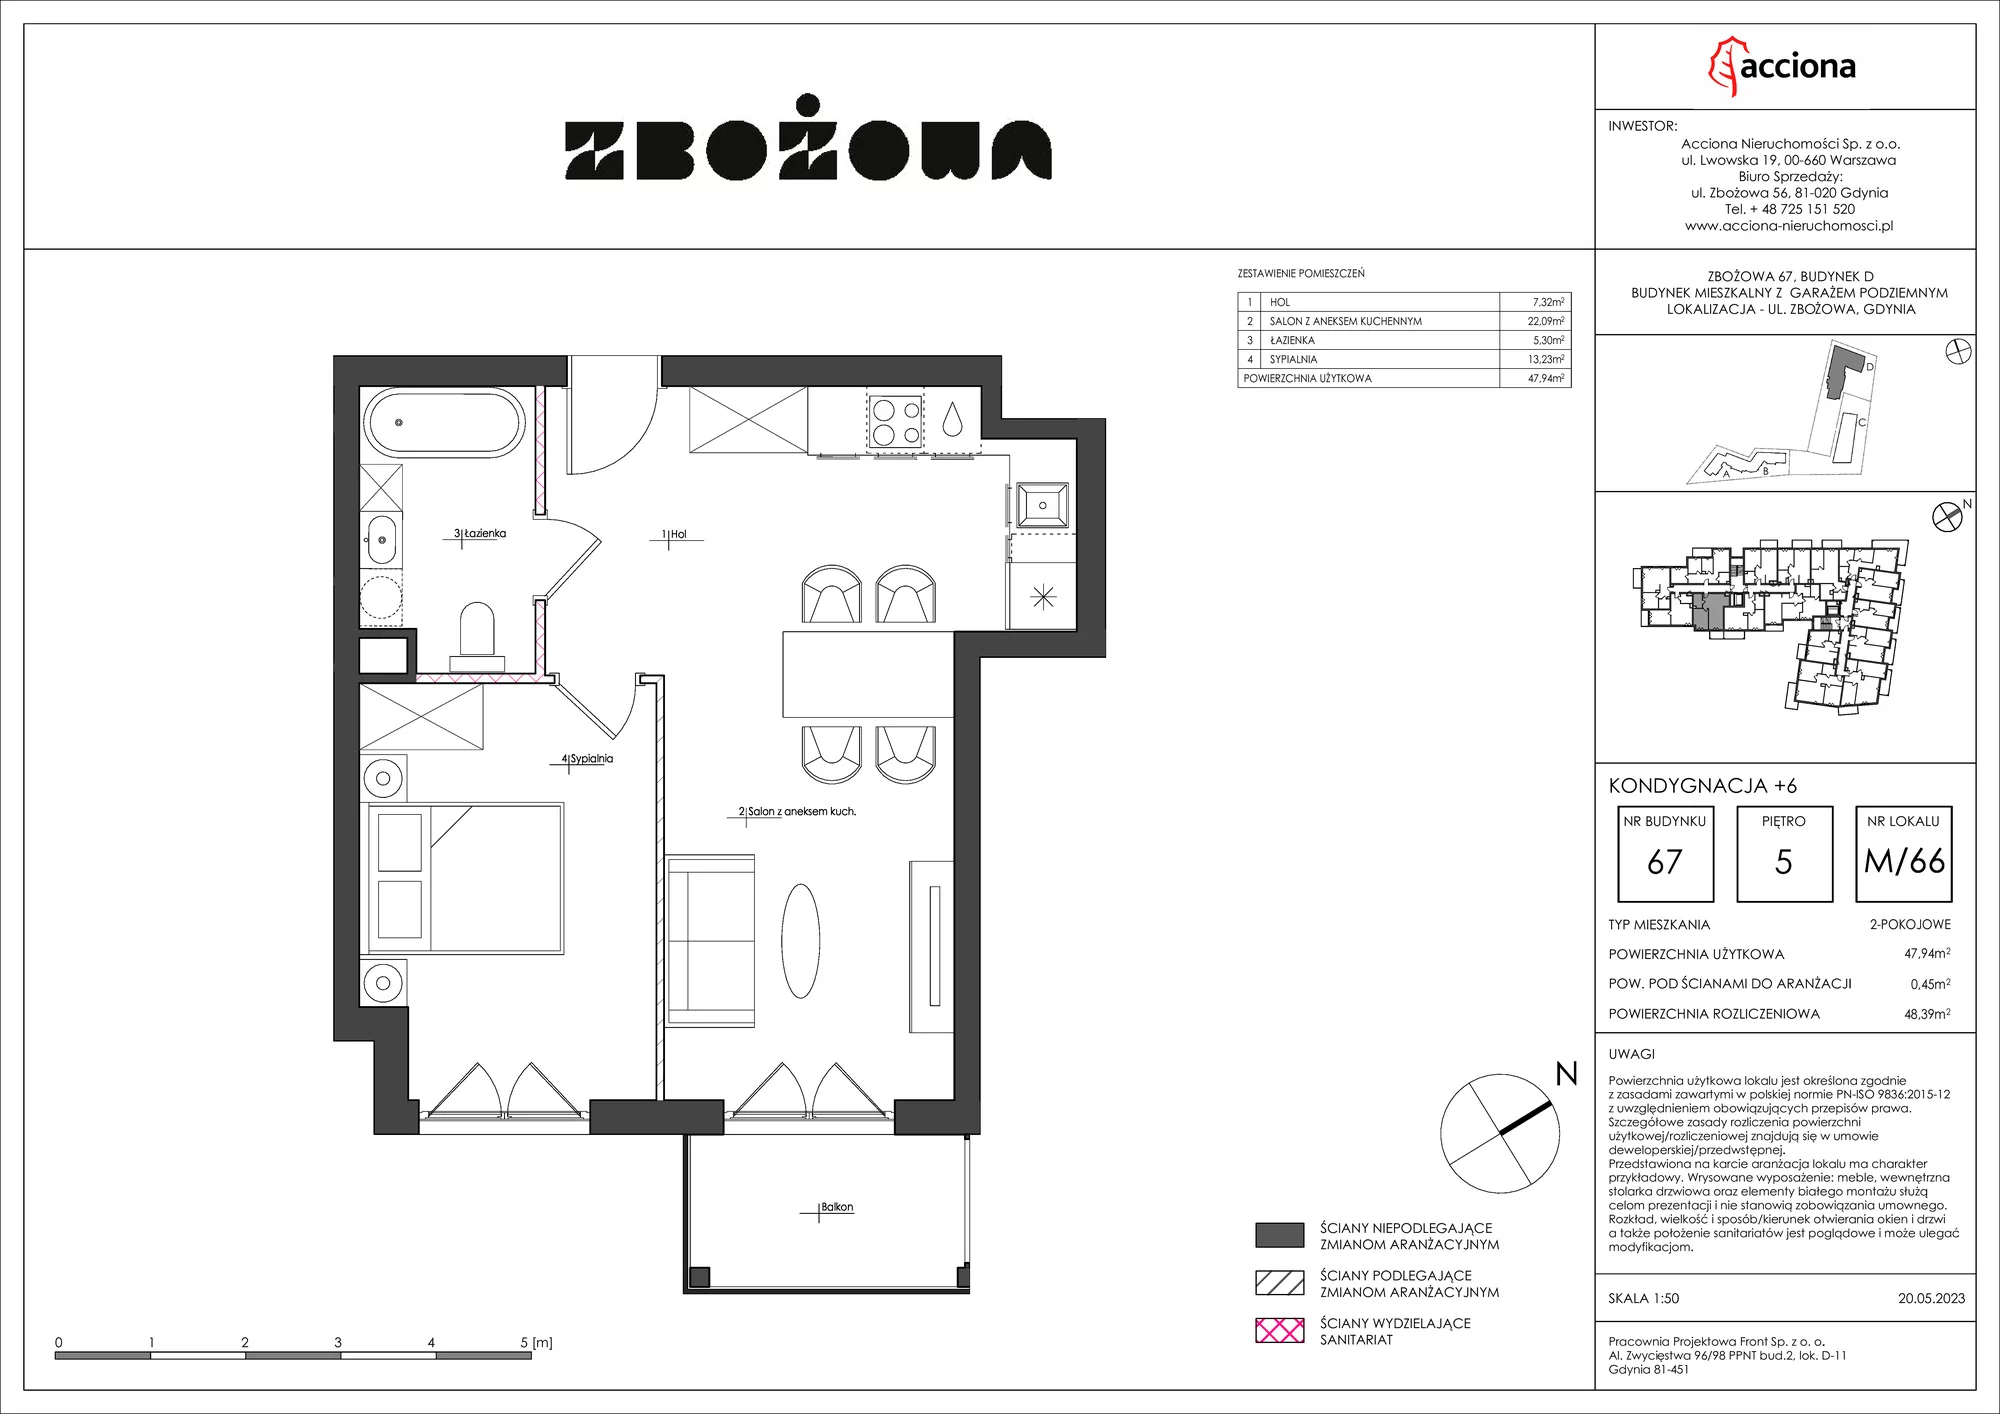 Mieszkanie 48,39 m², piętro 5, oferta nr 67.66, Zbożowa, Gdynia, Cisowa, ul. Zbożowa